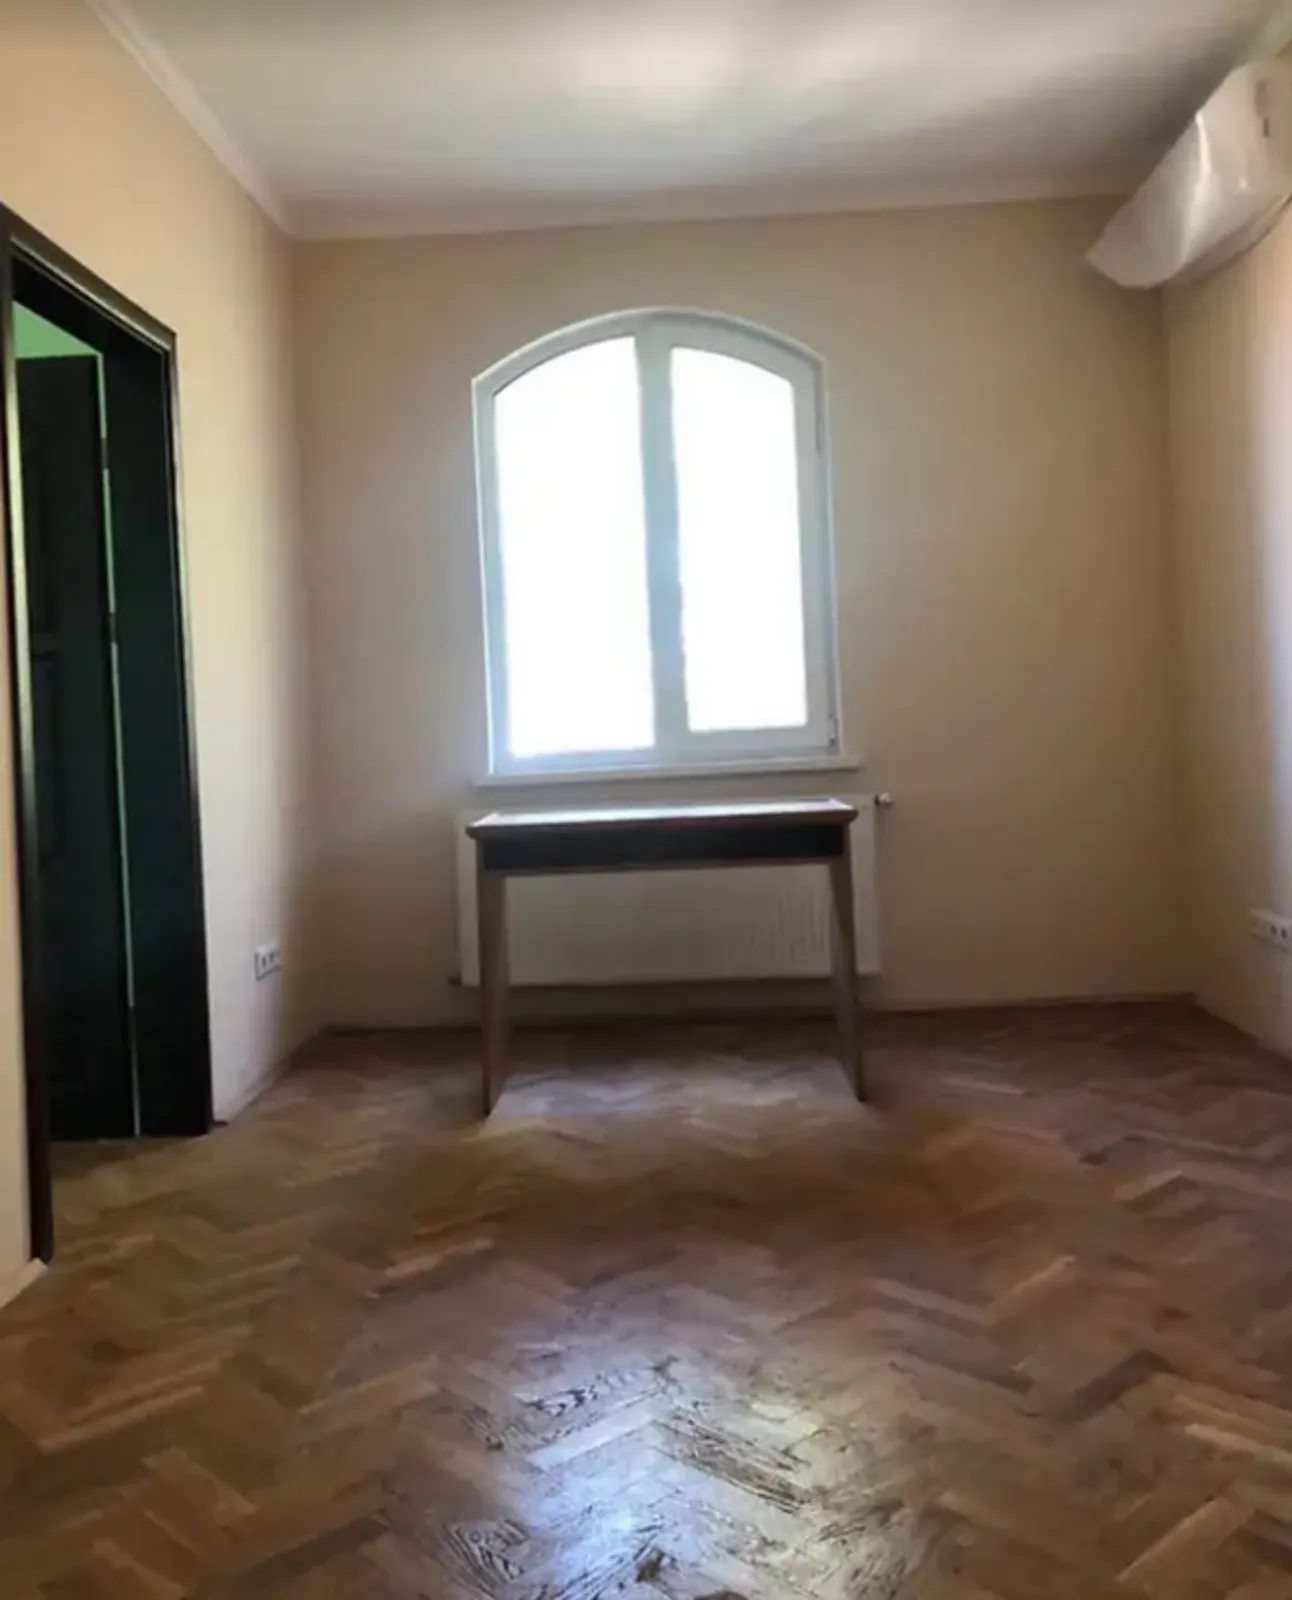 Продам нерухомість під комерцію. 60 m², 1st floor/3 floors. Лукяновича Д. вул., Тернопіль. 